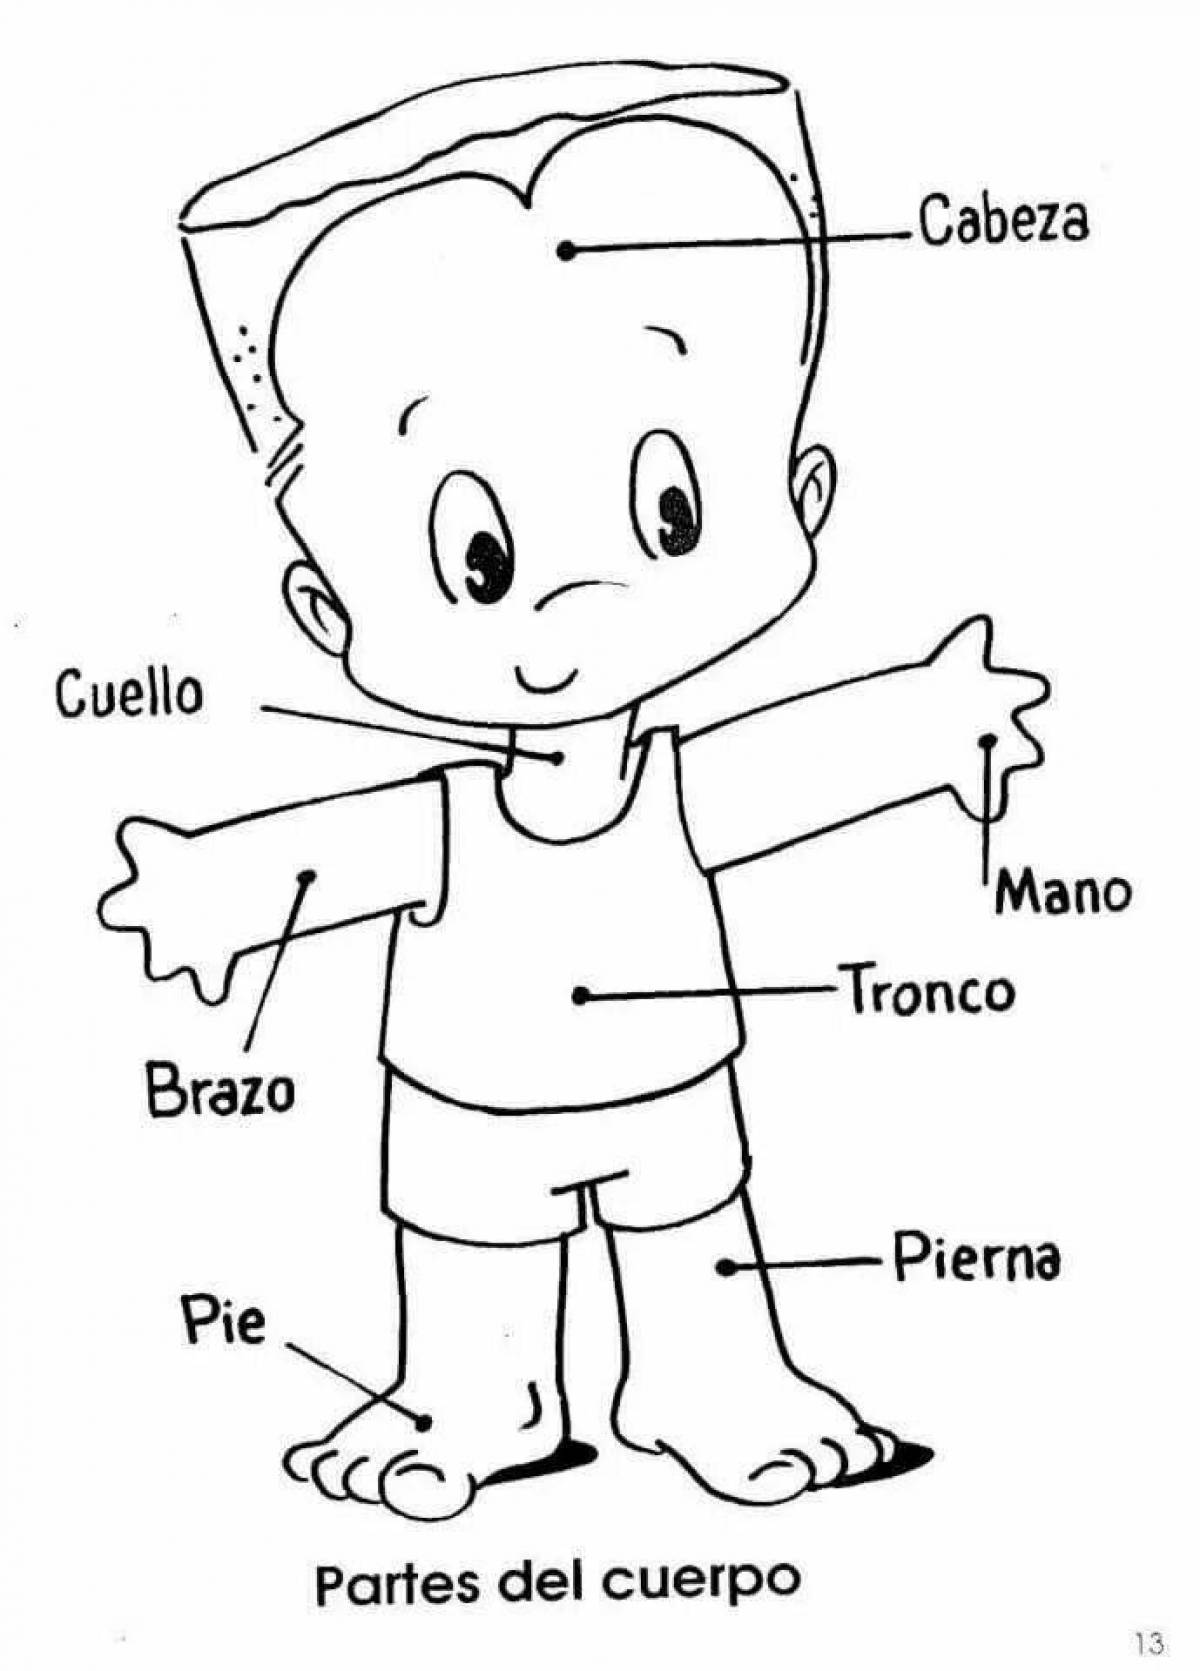 Изображение ребенка для изучения частей тела